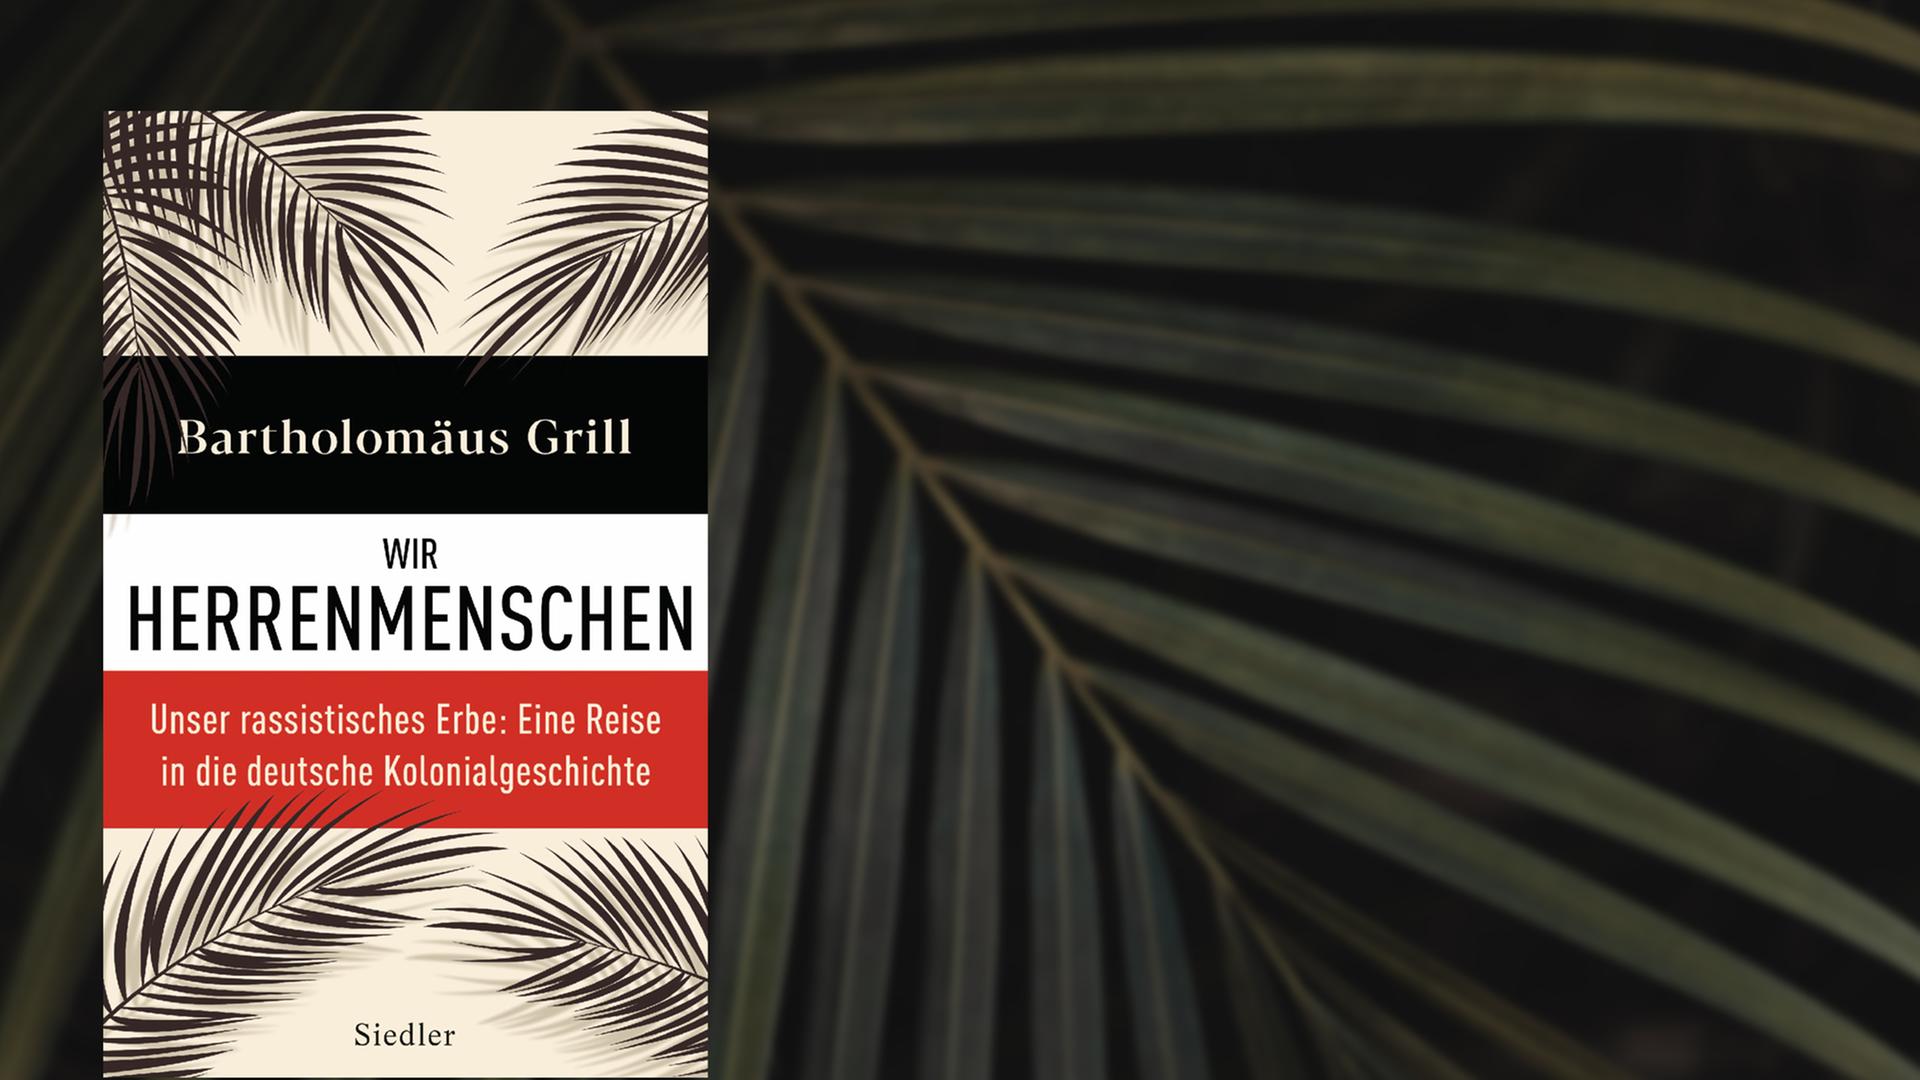 Im Vordergrund das Cover von Bartholomäus Grills "Wir Herrenmenschen", das mit Palmblättern illustriert ist, im Hintergrund ein Palmblatt vor dunkler Fläche.